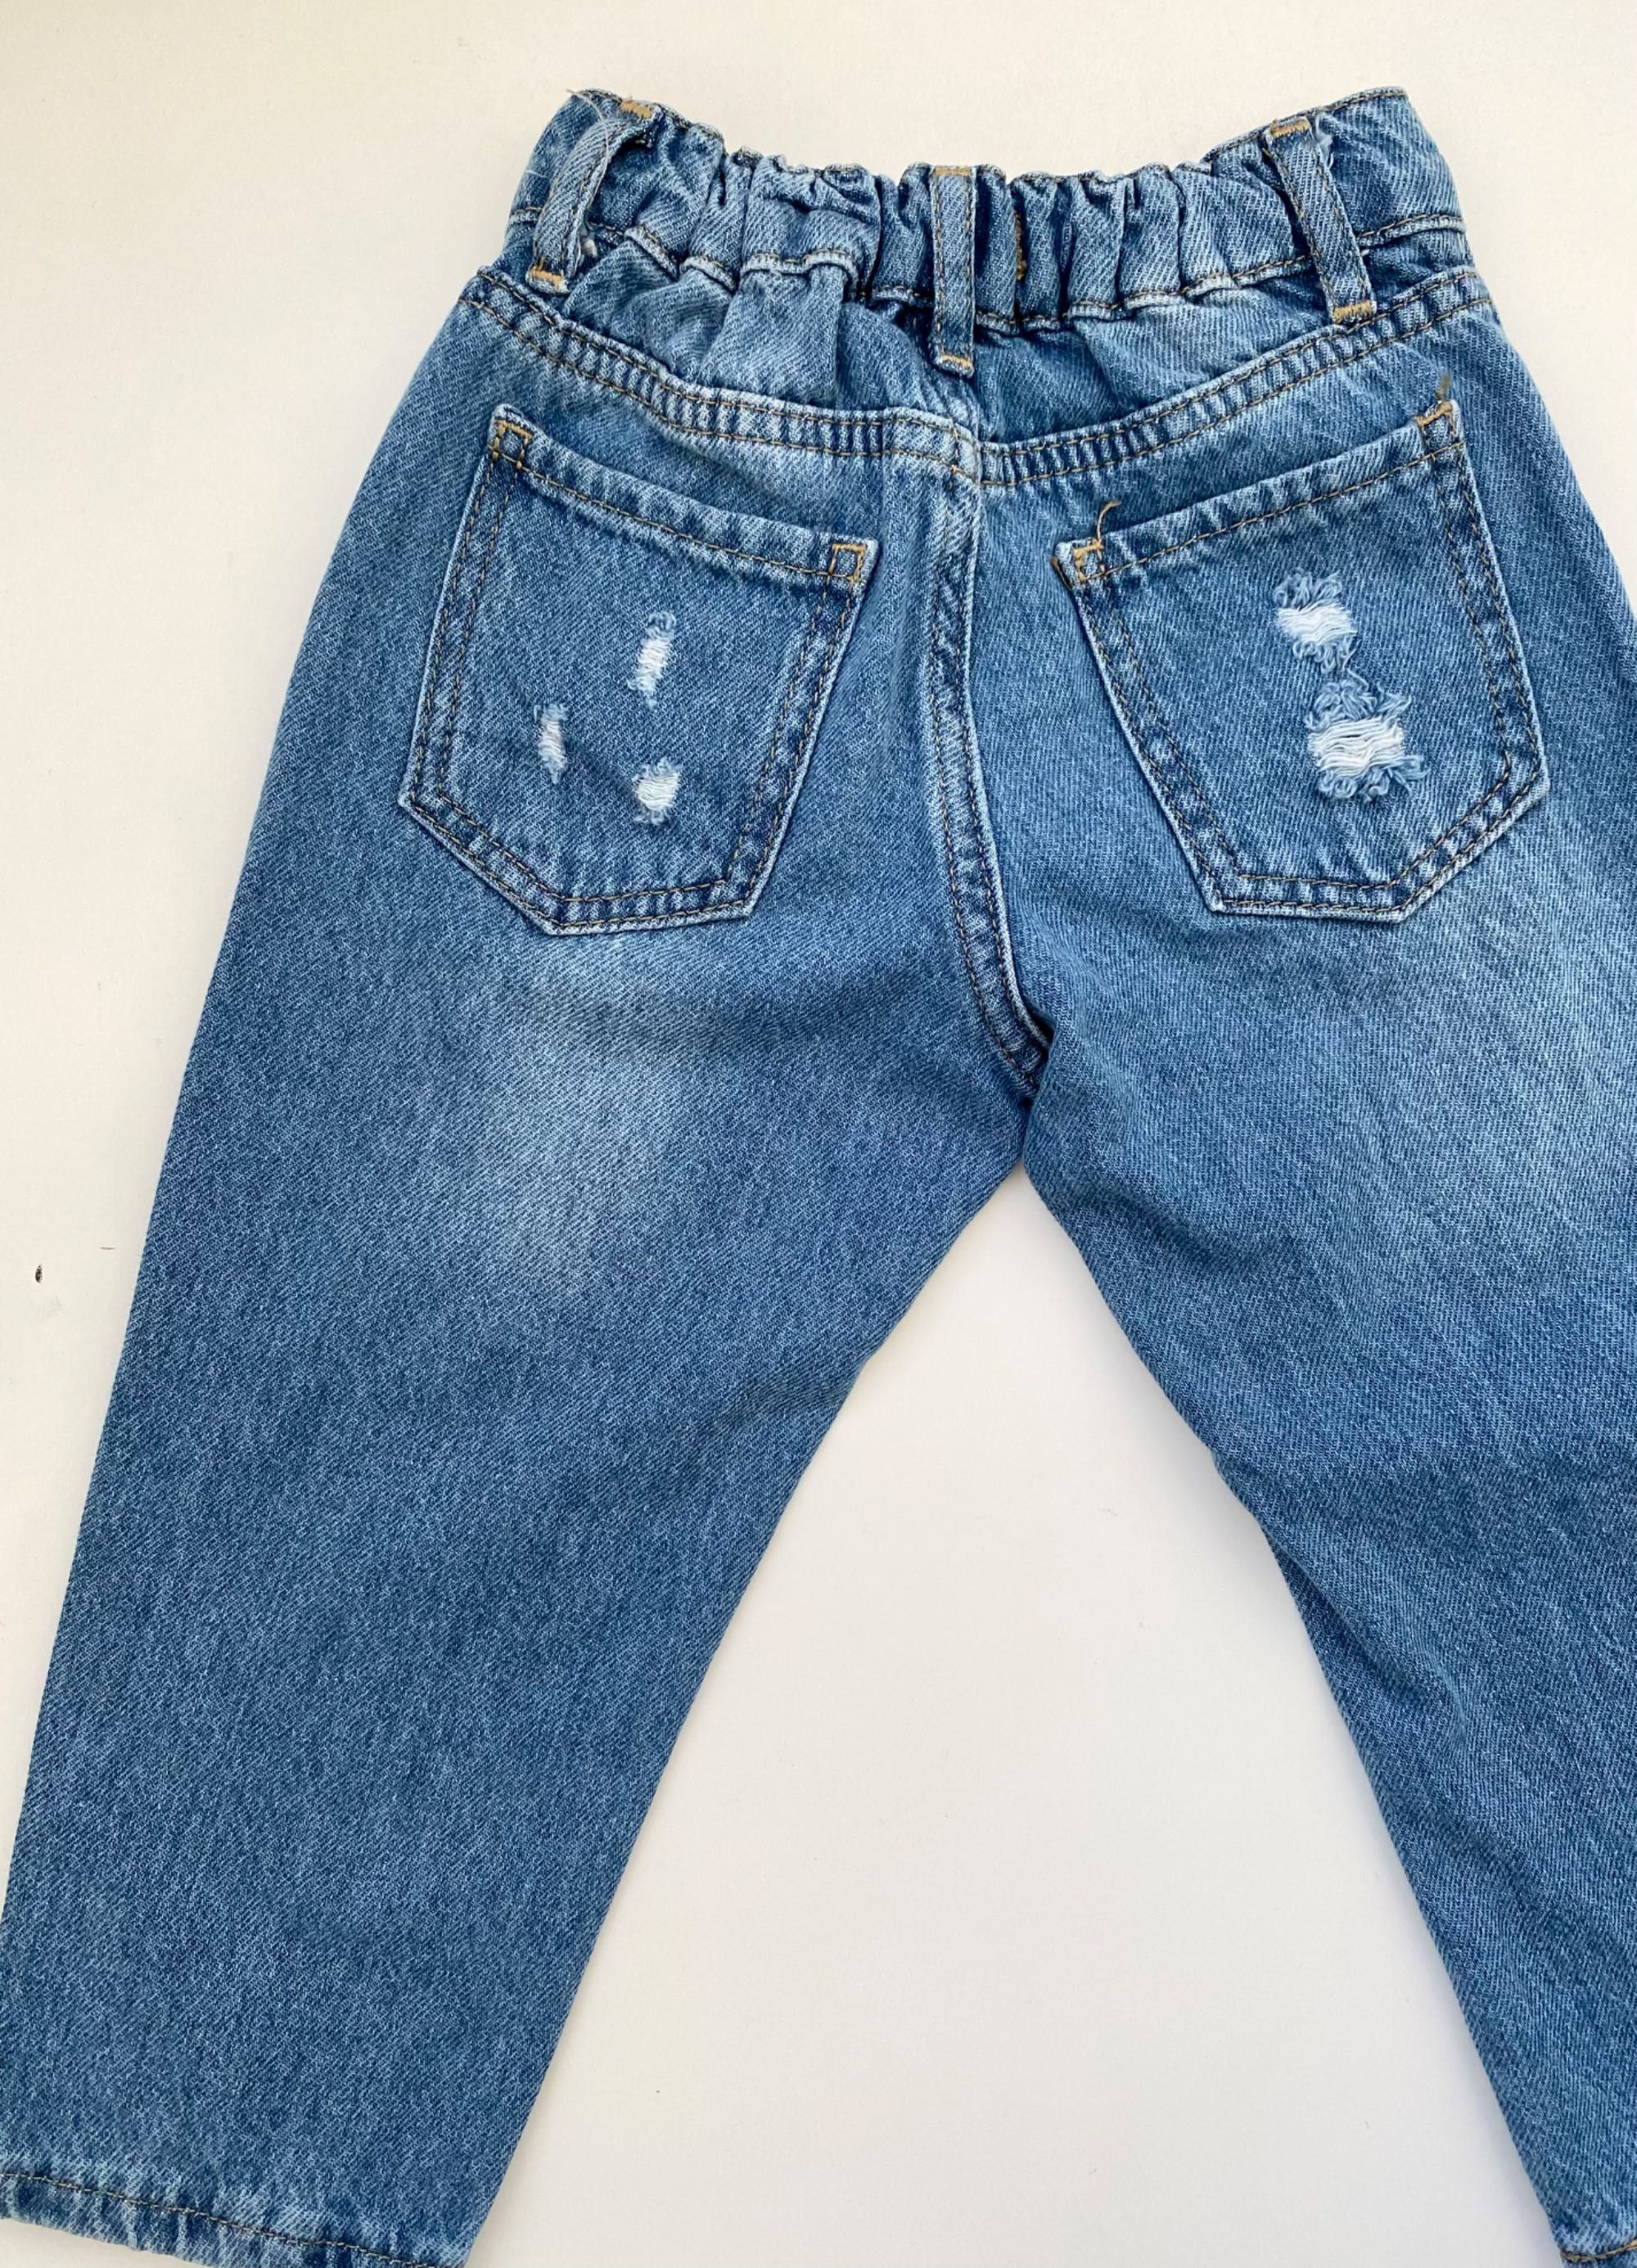 Джинсы Zara для мальчика, джинсы для девочки клеш, мом, 92, 98,104,116